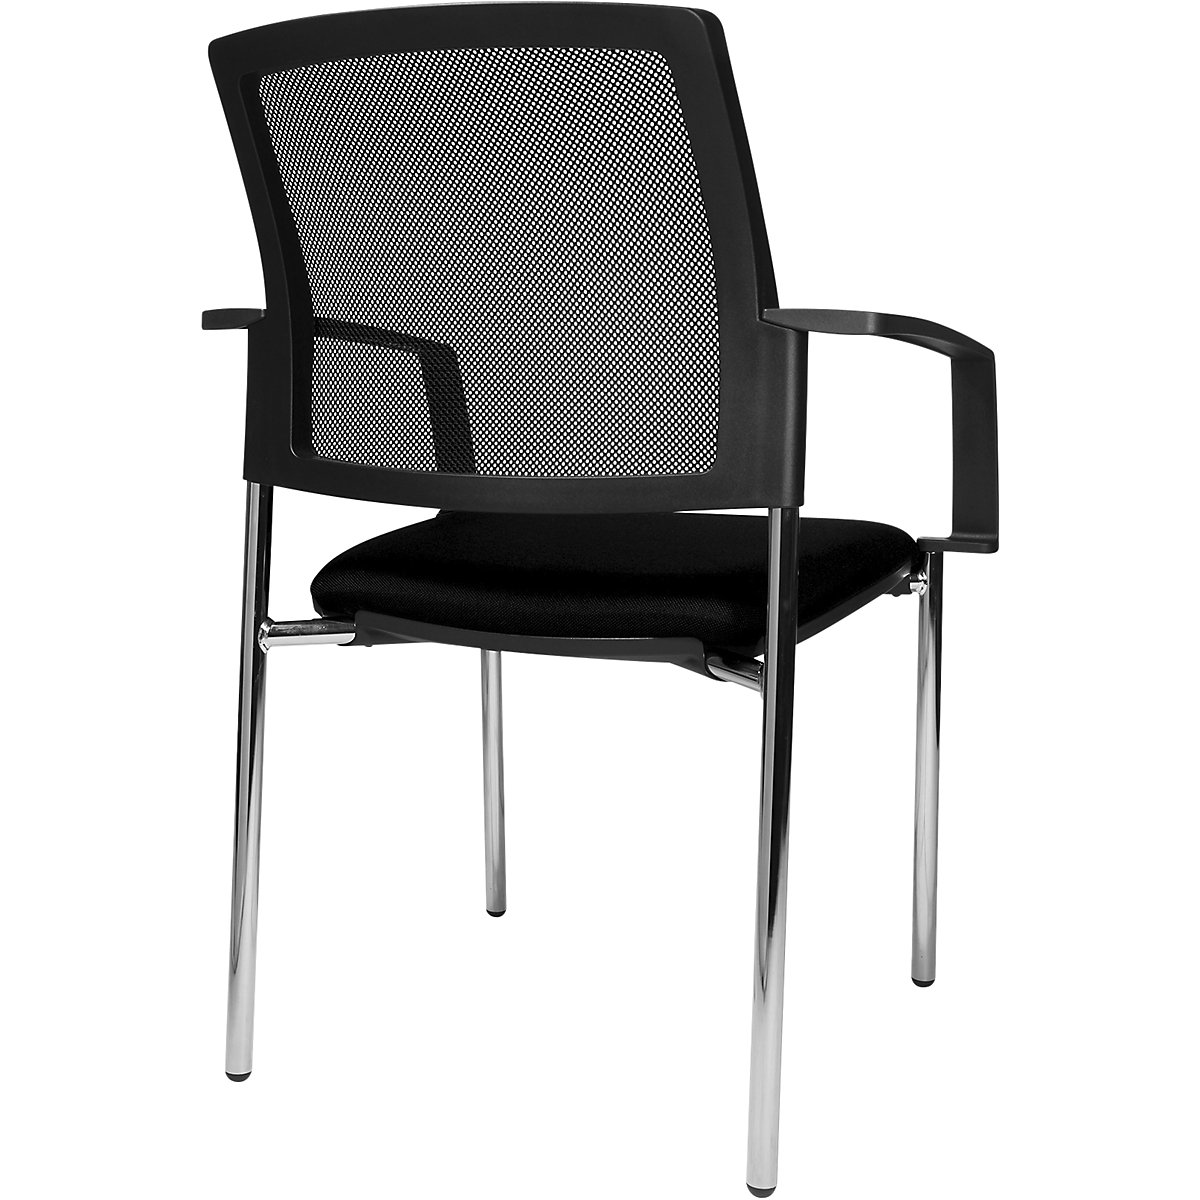 Složiva stolica s mrežastim naslonom – Topstar (Prikaz proizvoda 18)